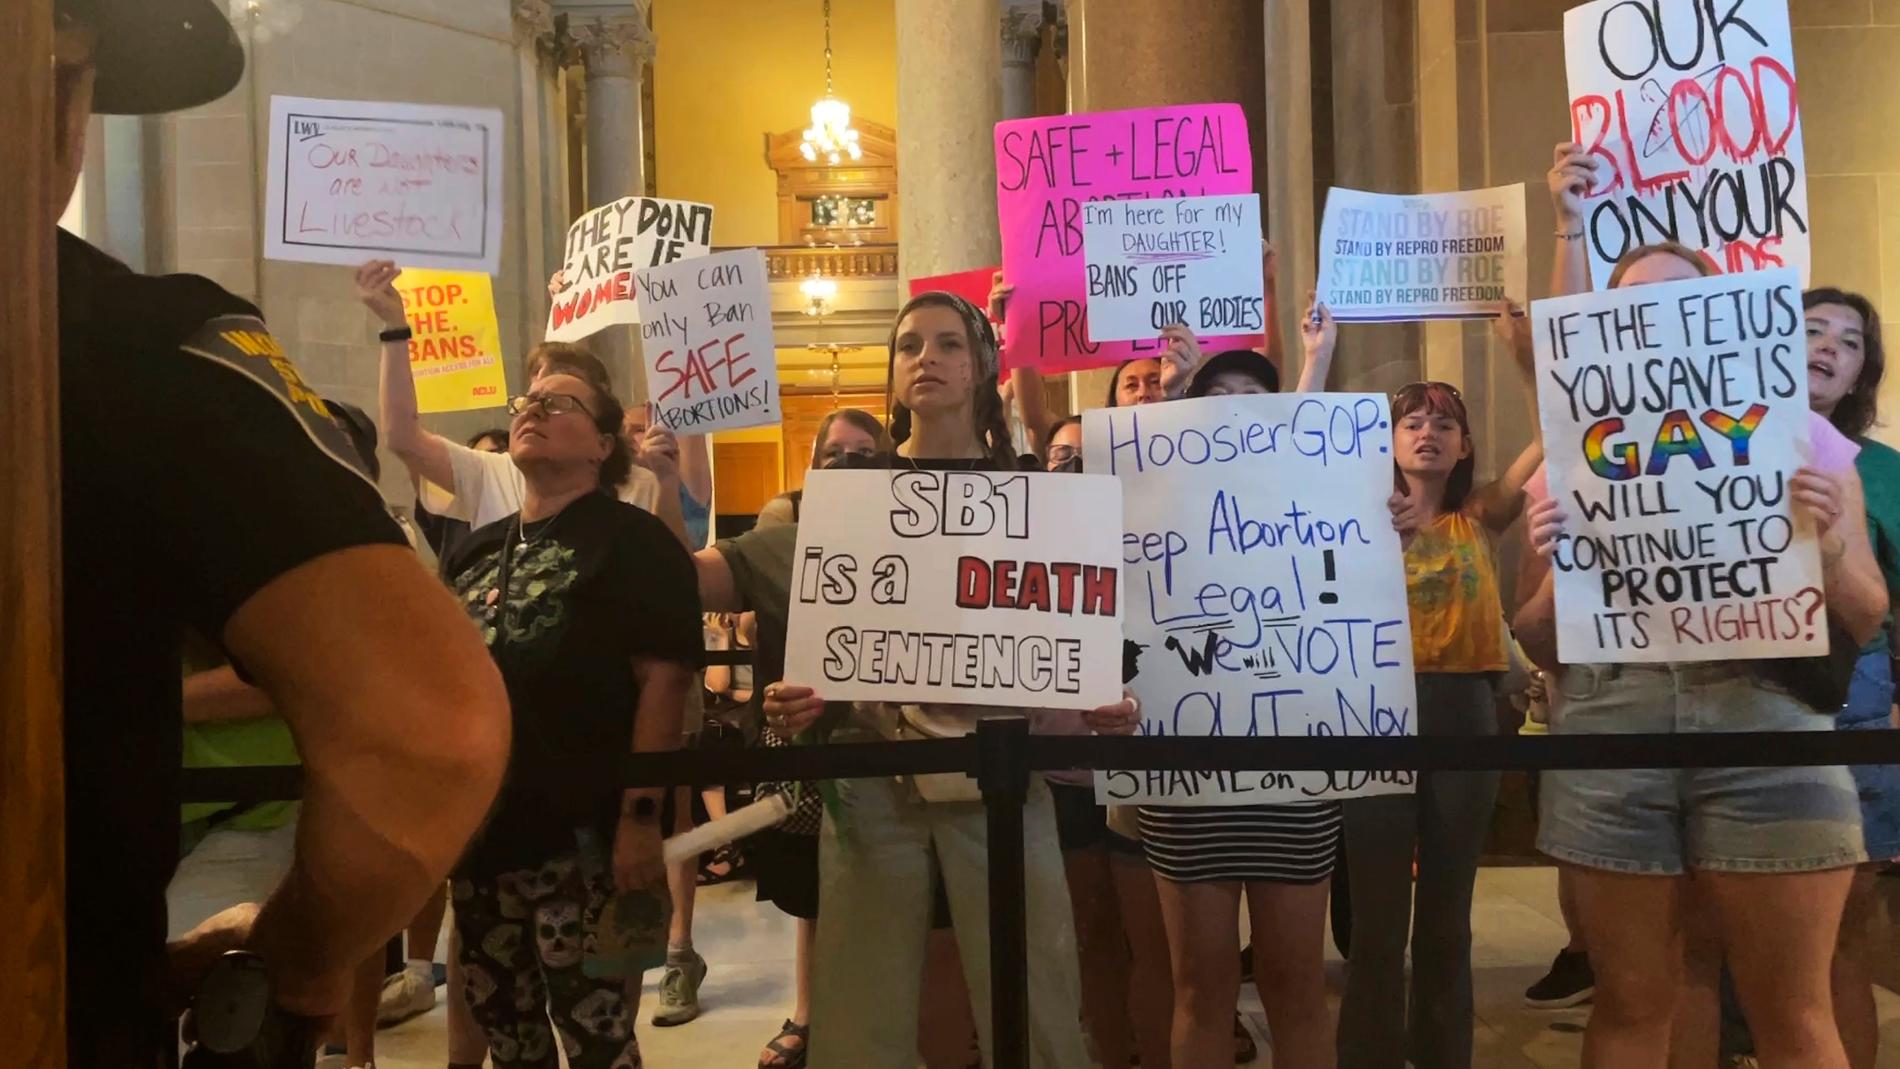 Indiana har vedtatt forbud mot abort